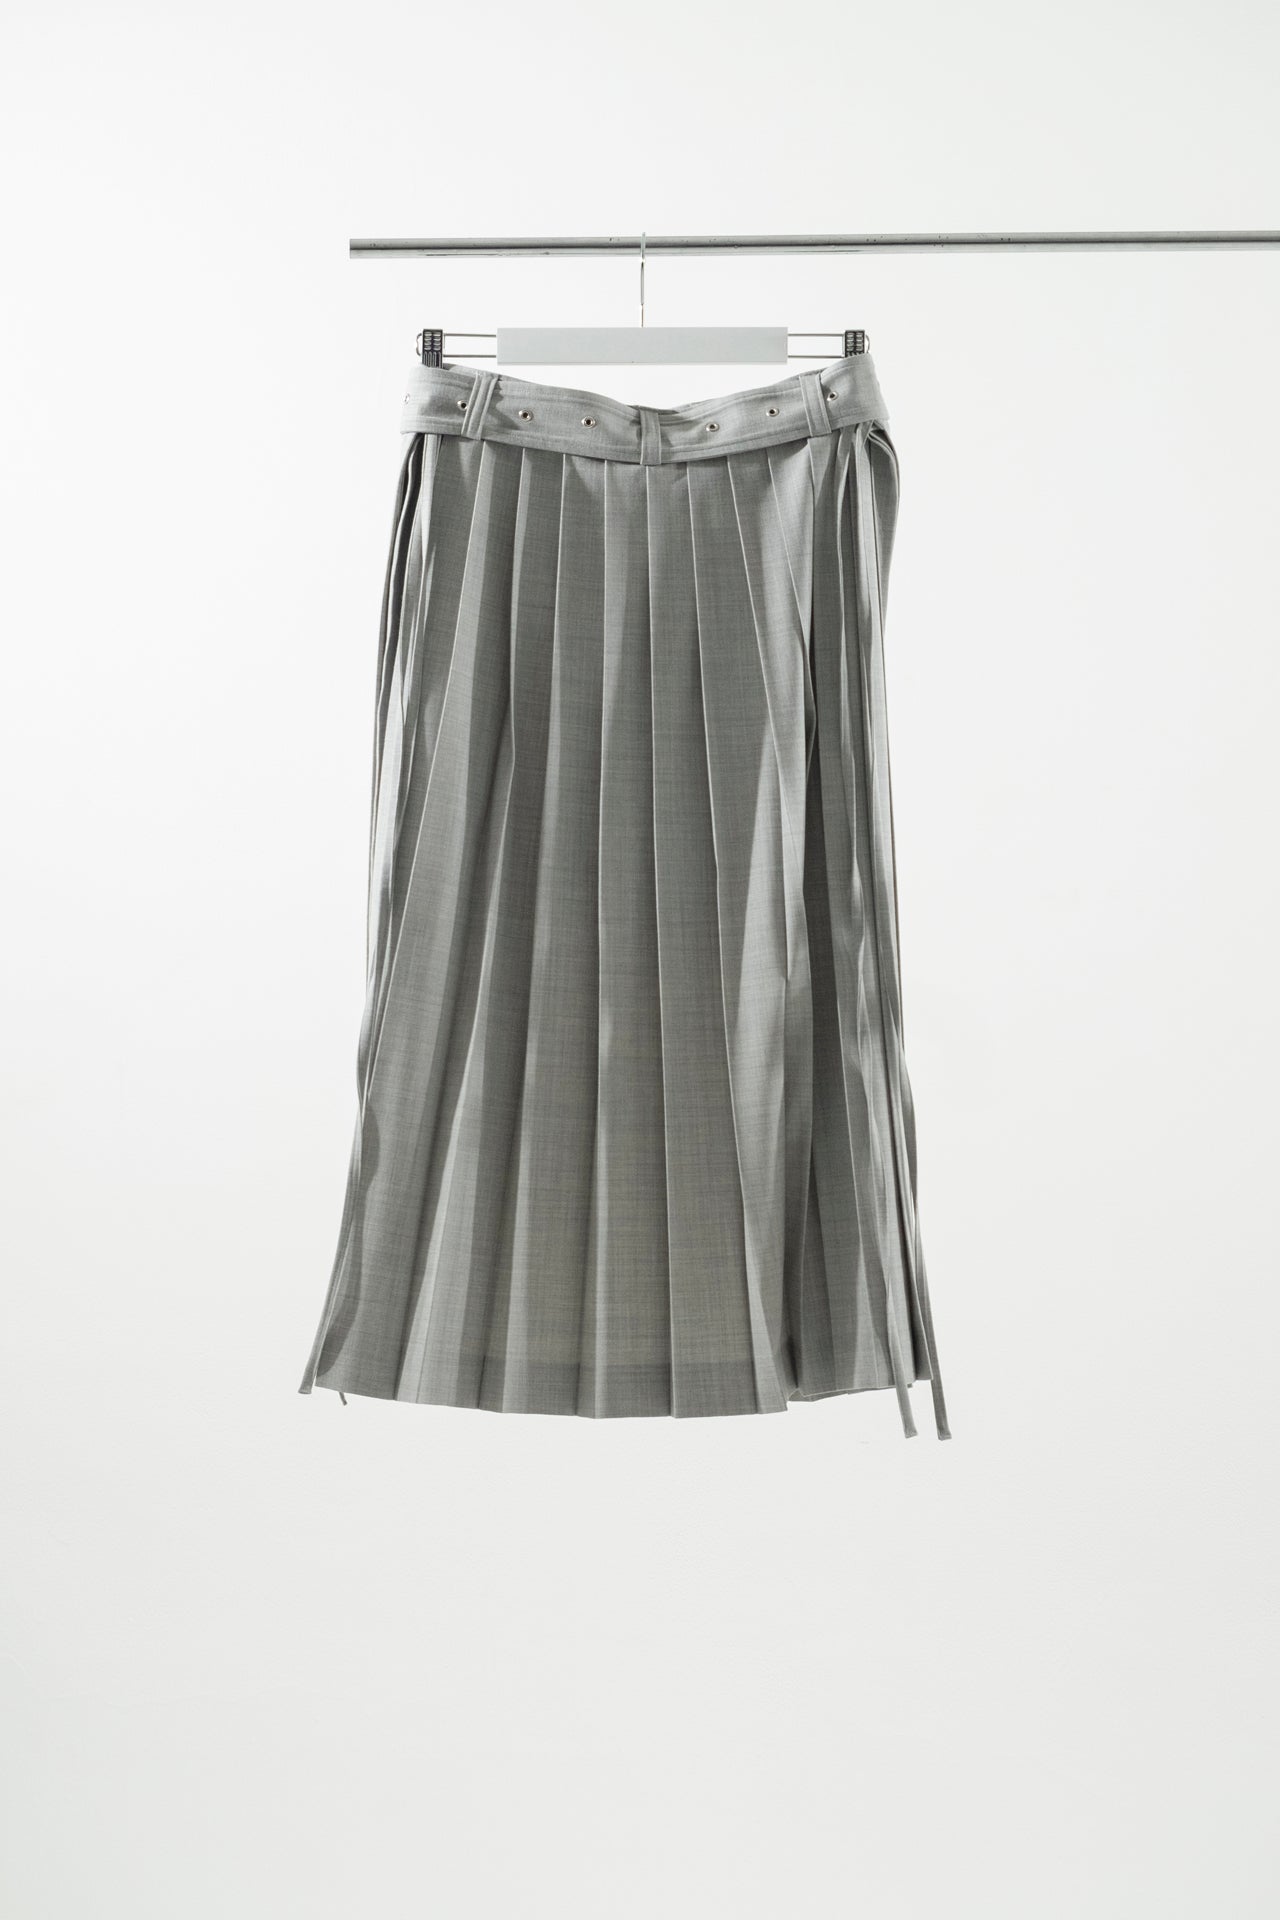 完売】MEER.shirring frill skirt light gray - www.macaluminio.com